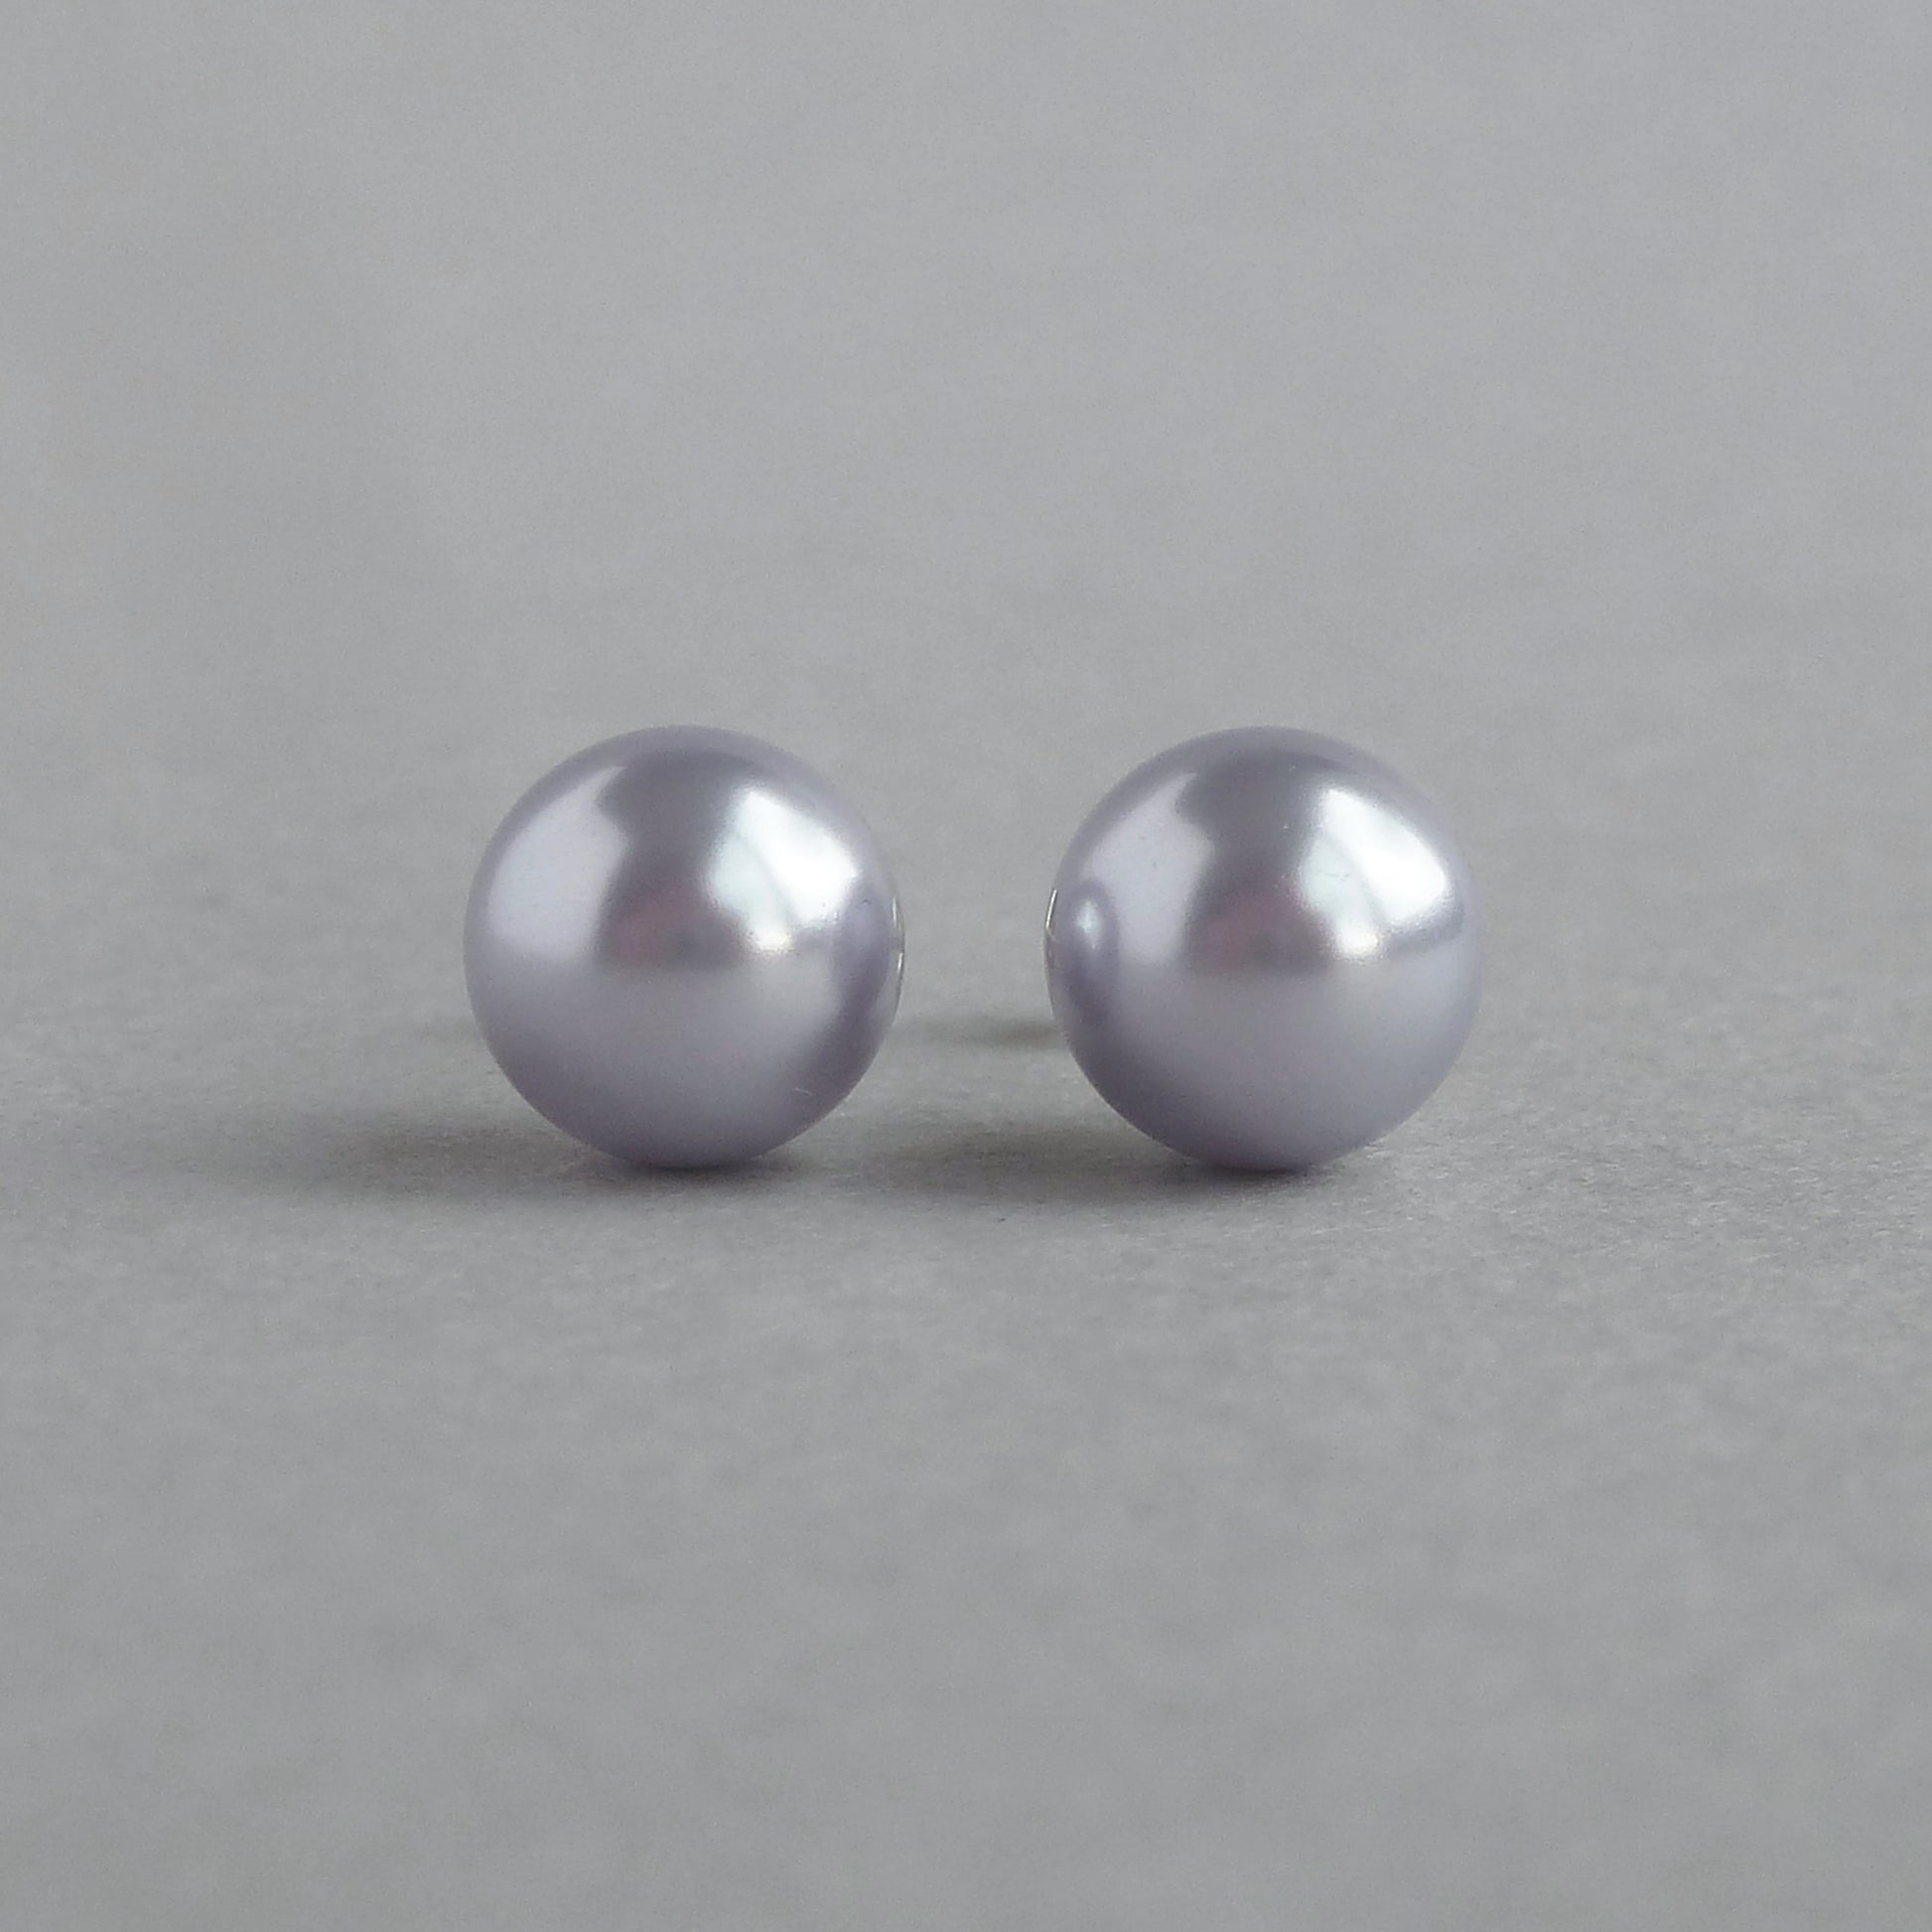 Round lavender pearl stud earrings